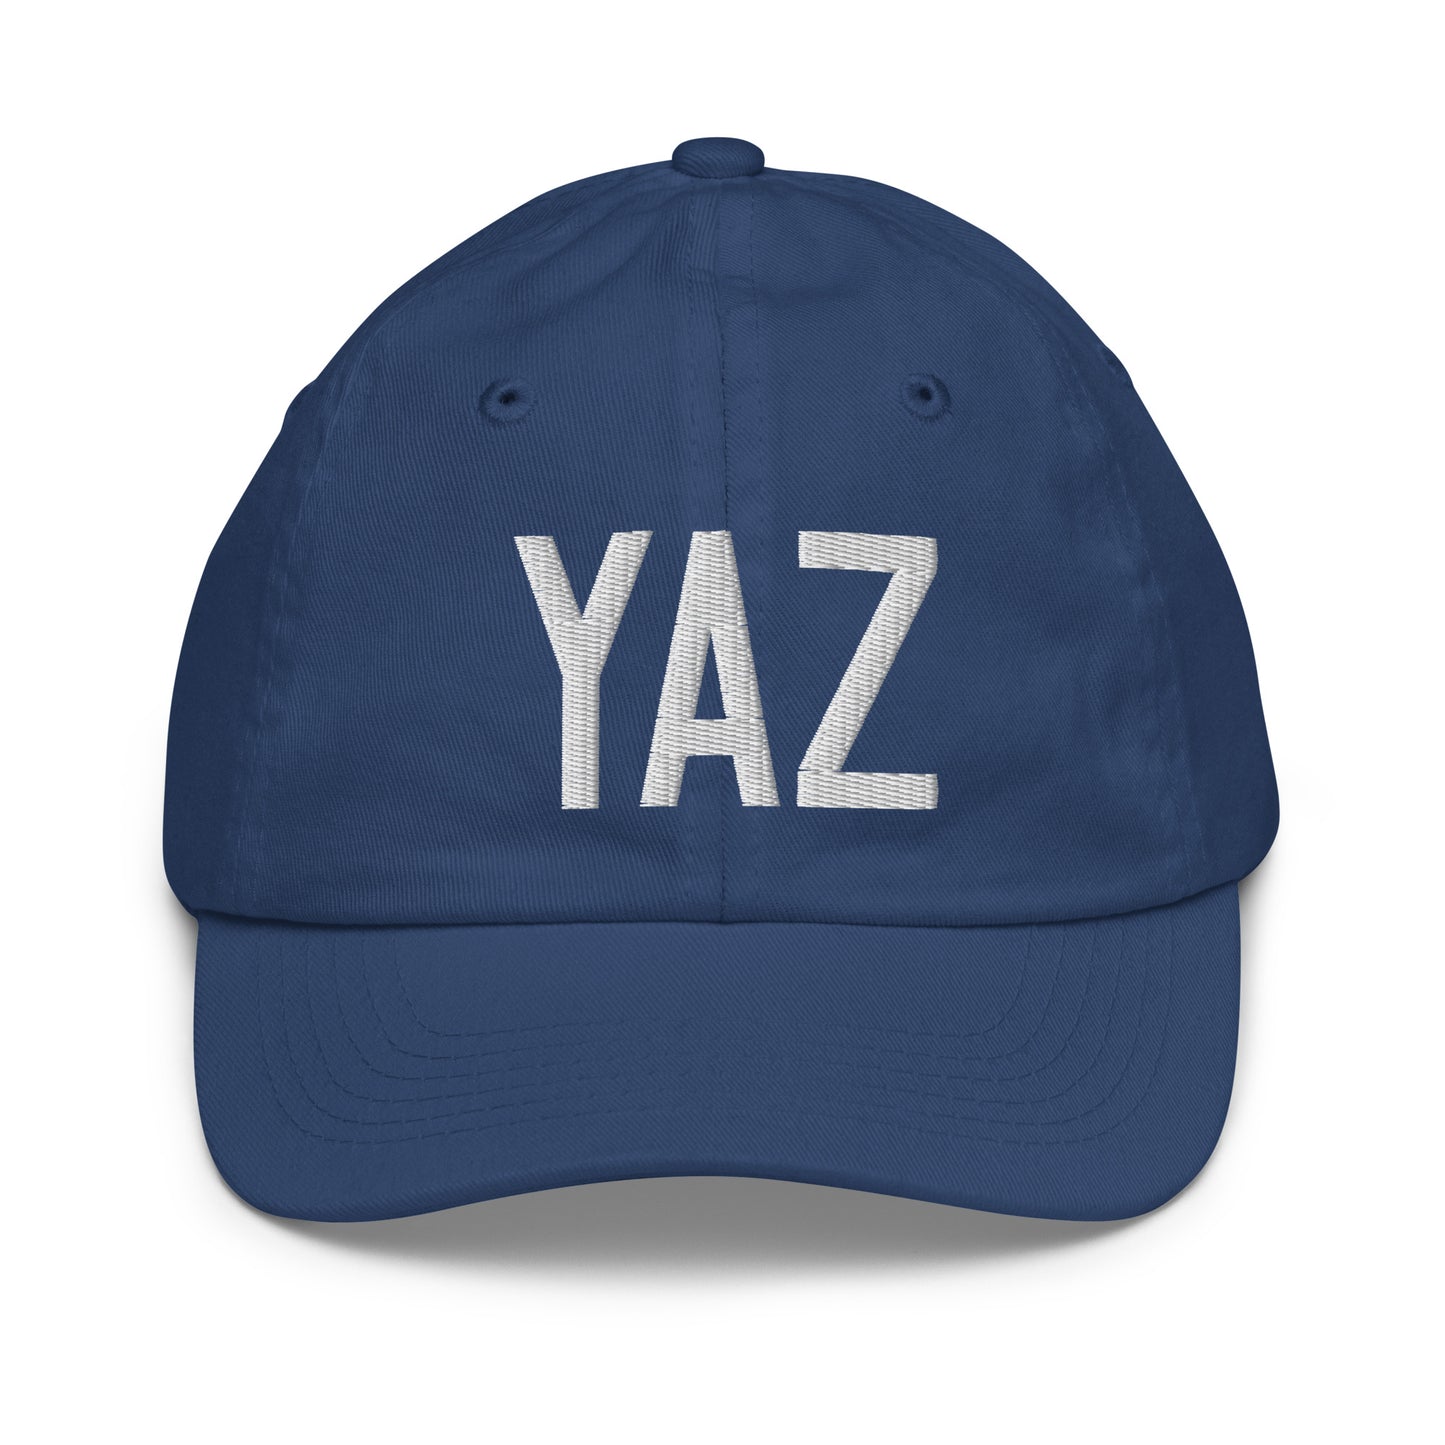 Airport Code Kid's Baseball Cap - White • YAZ Tofino • YHM Designs - Image 20